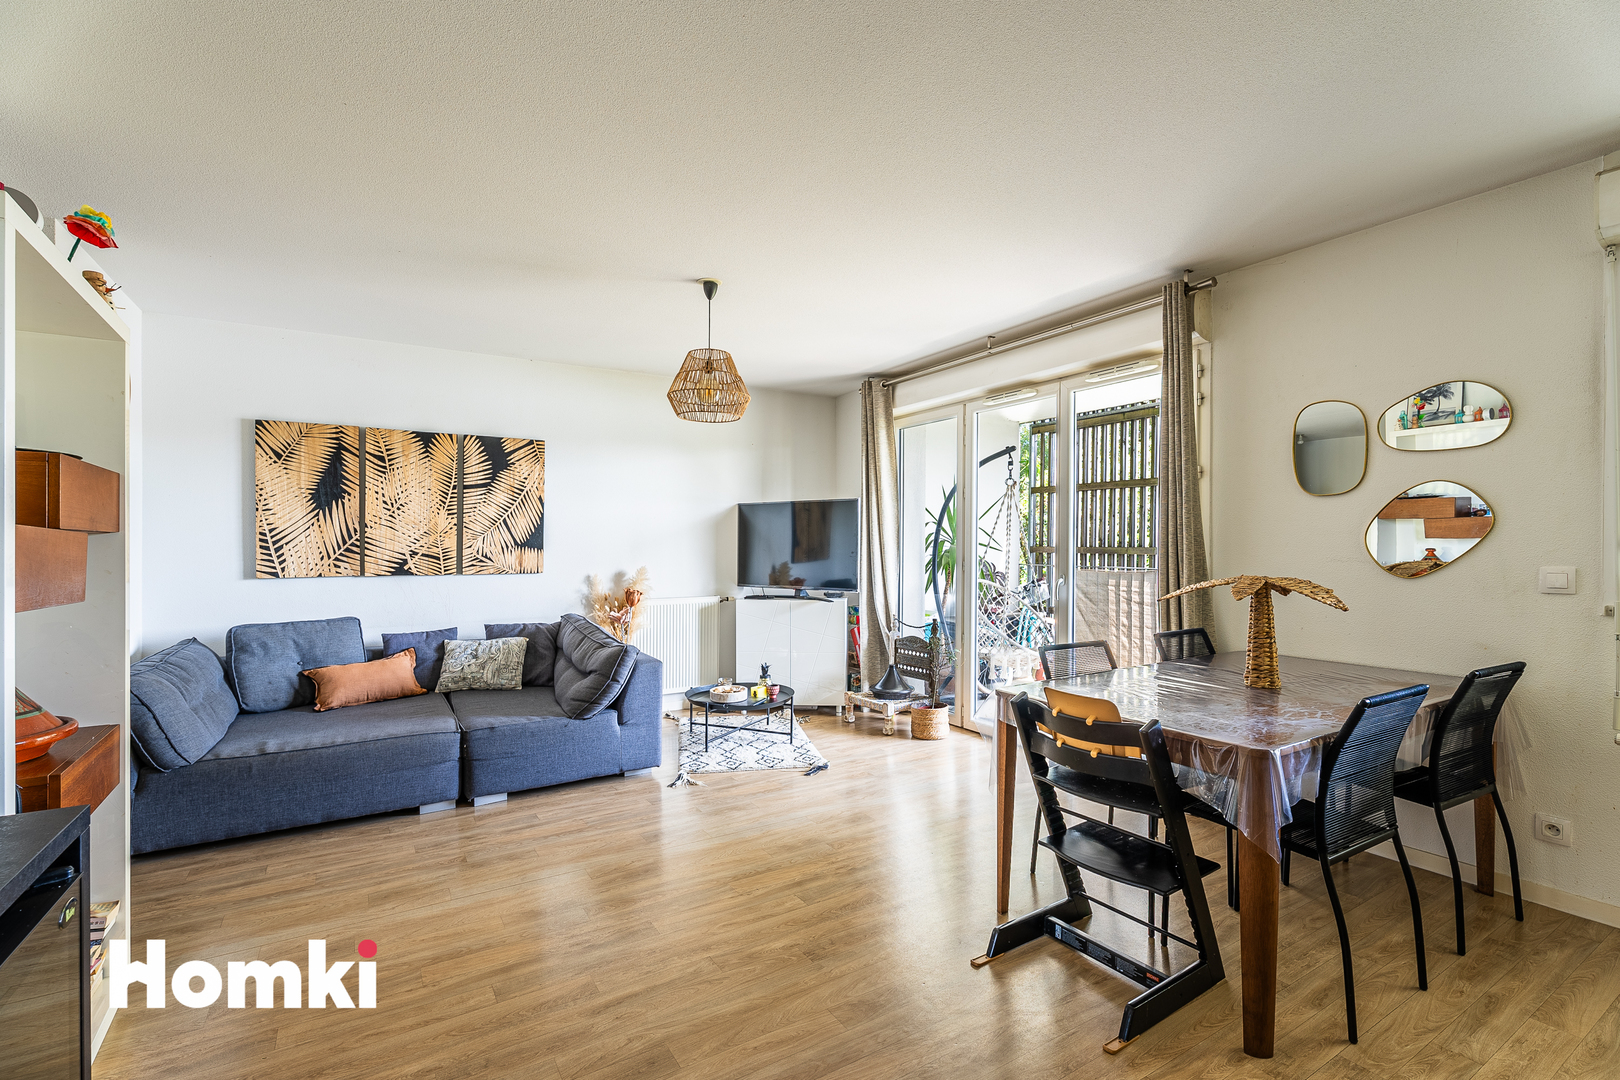 Homki - Vente Appartement  de 65.0 m² à Bruges 33520